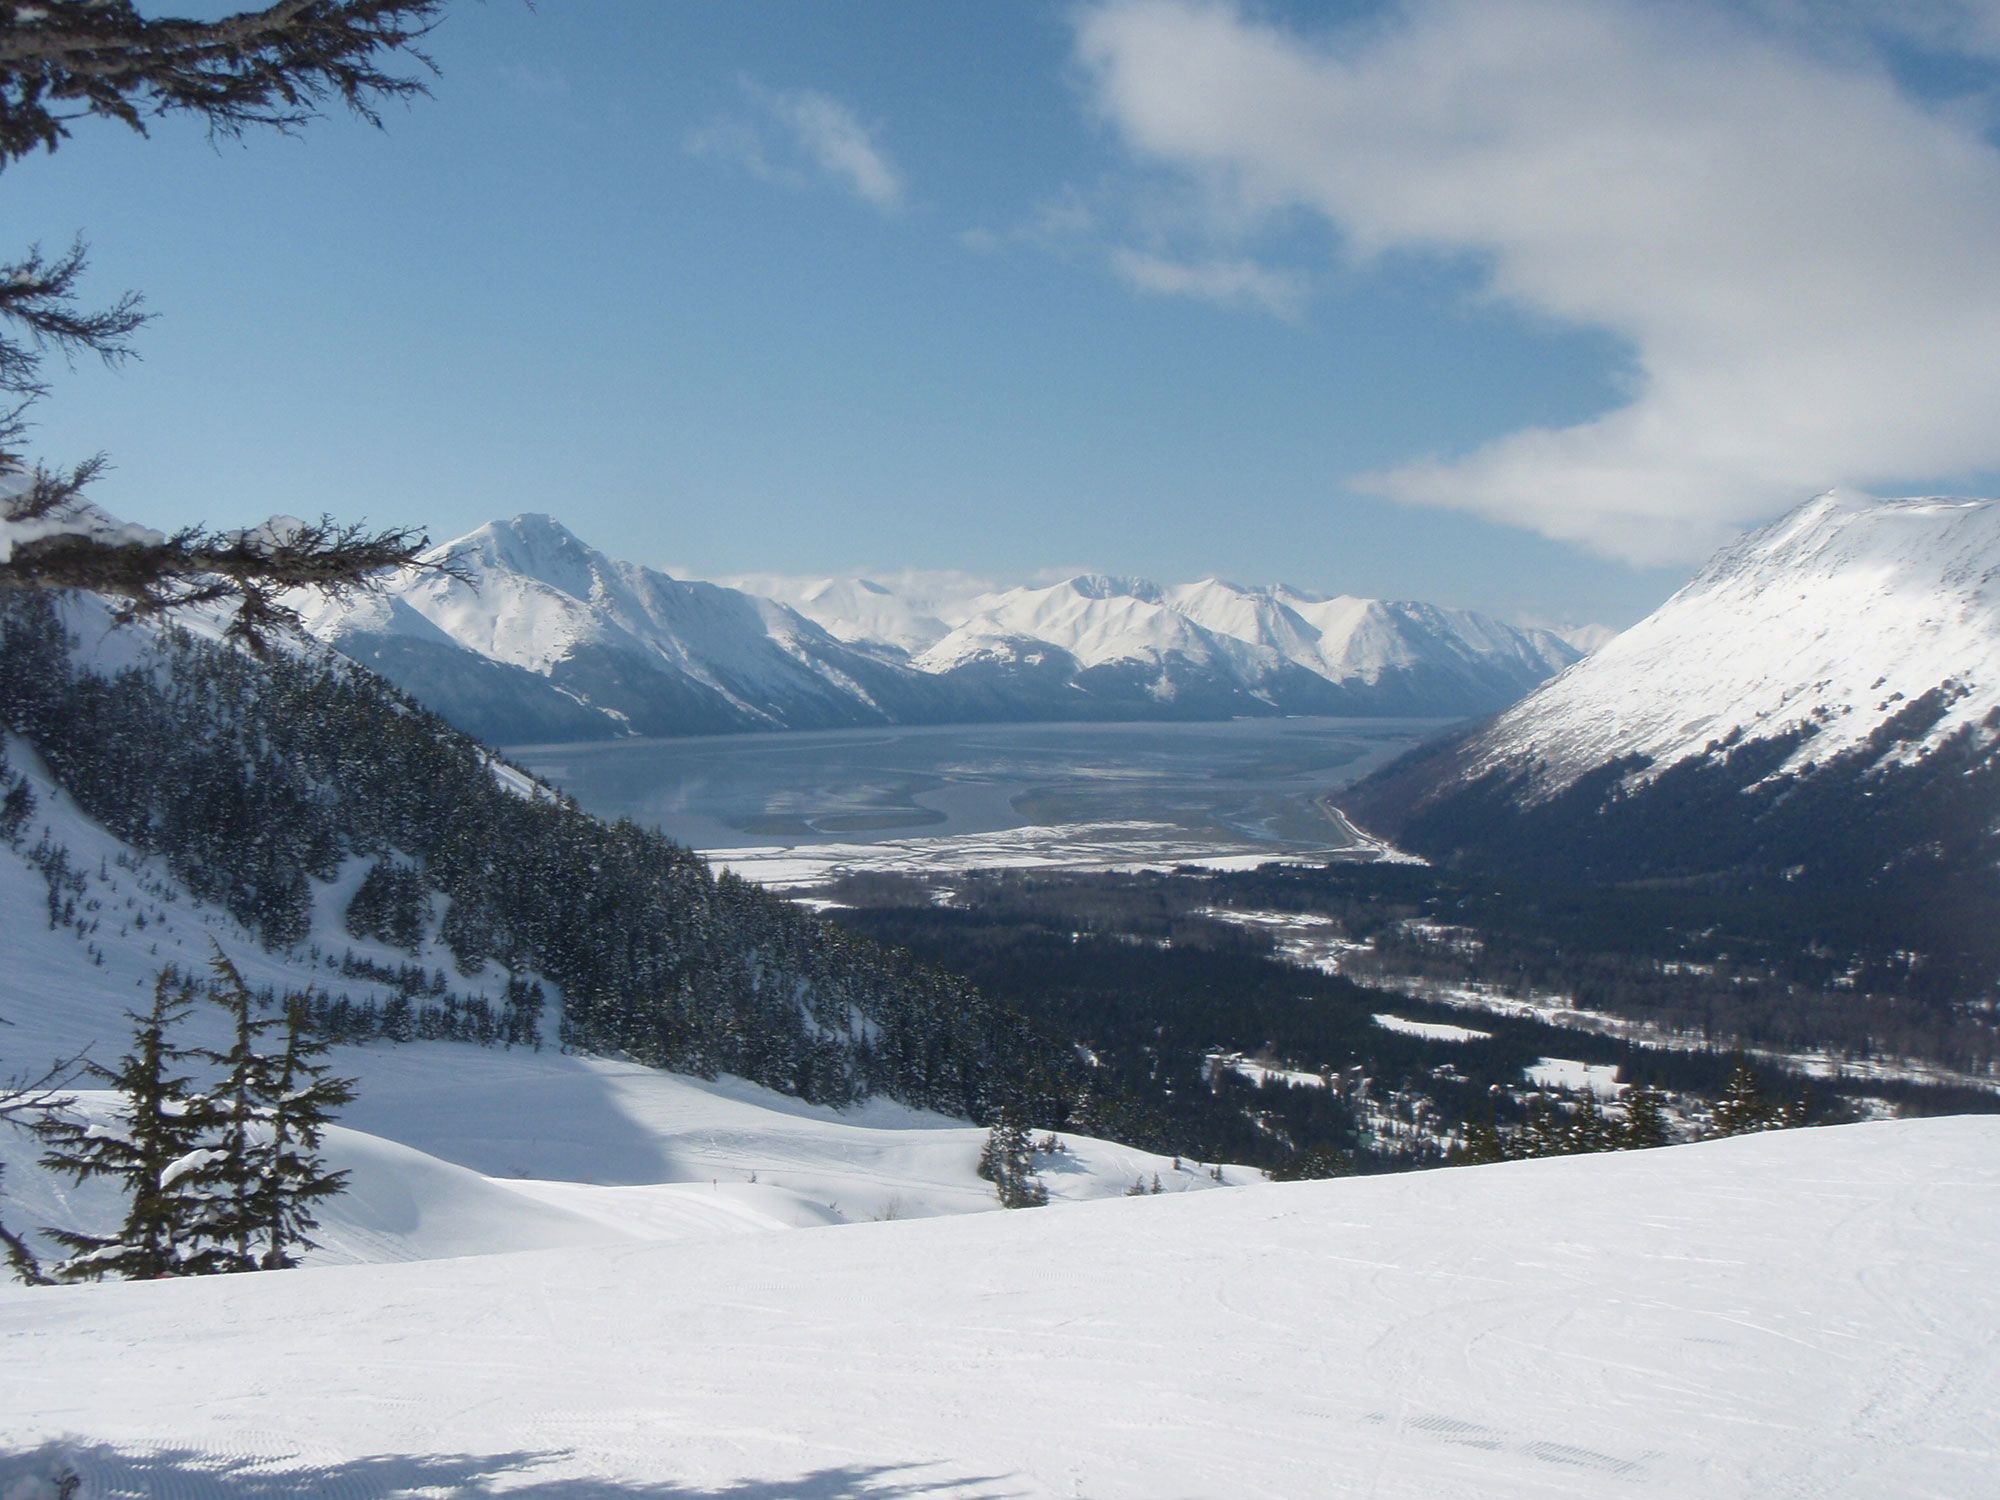 Mountain view during this epic winter wildlife tour